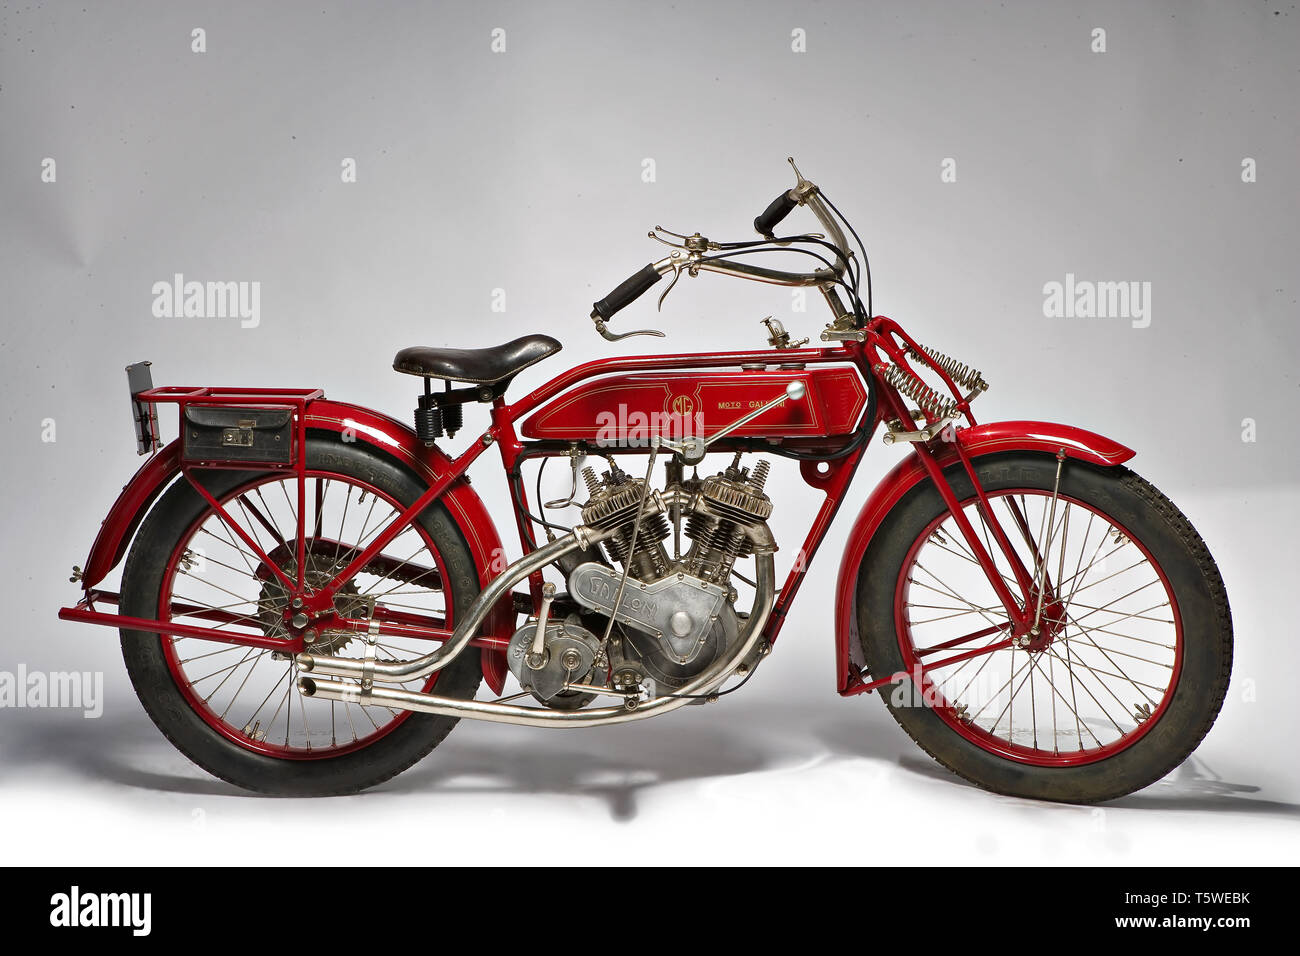 Moto d'epoca Galloni 750SS fabbrica: MG-Moto Galloni modello: 750SS fabbricata in: Italia - Borgomanero anno di costruzione: 1920-21 Stockfoto